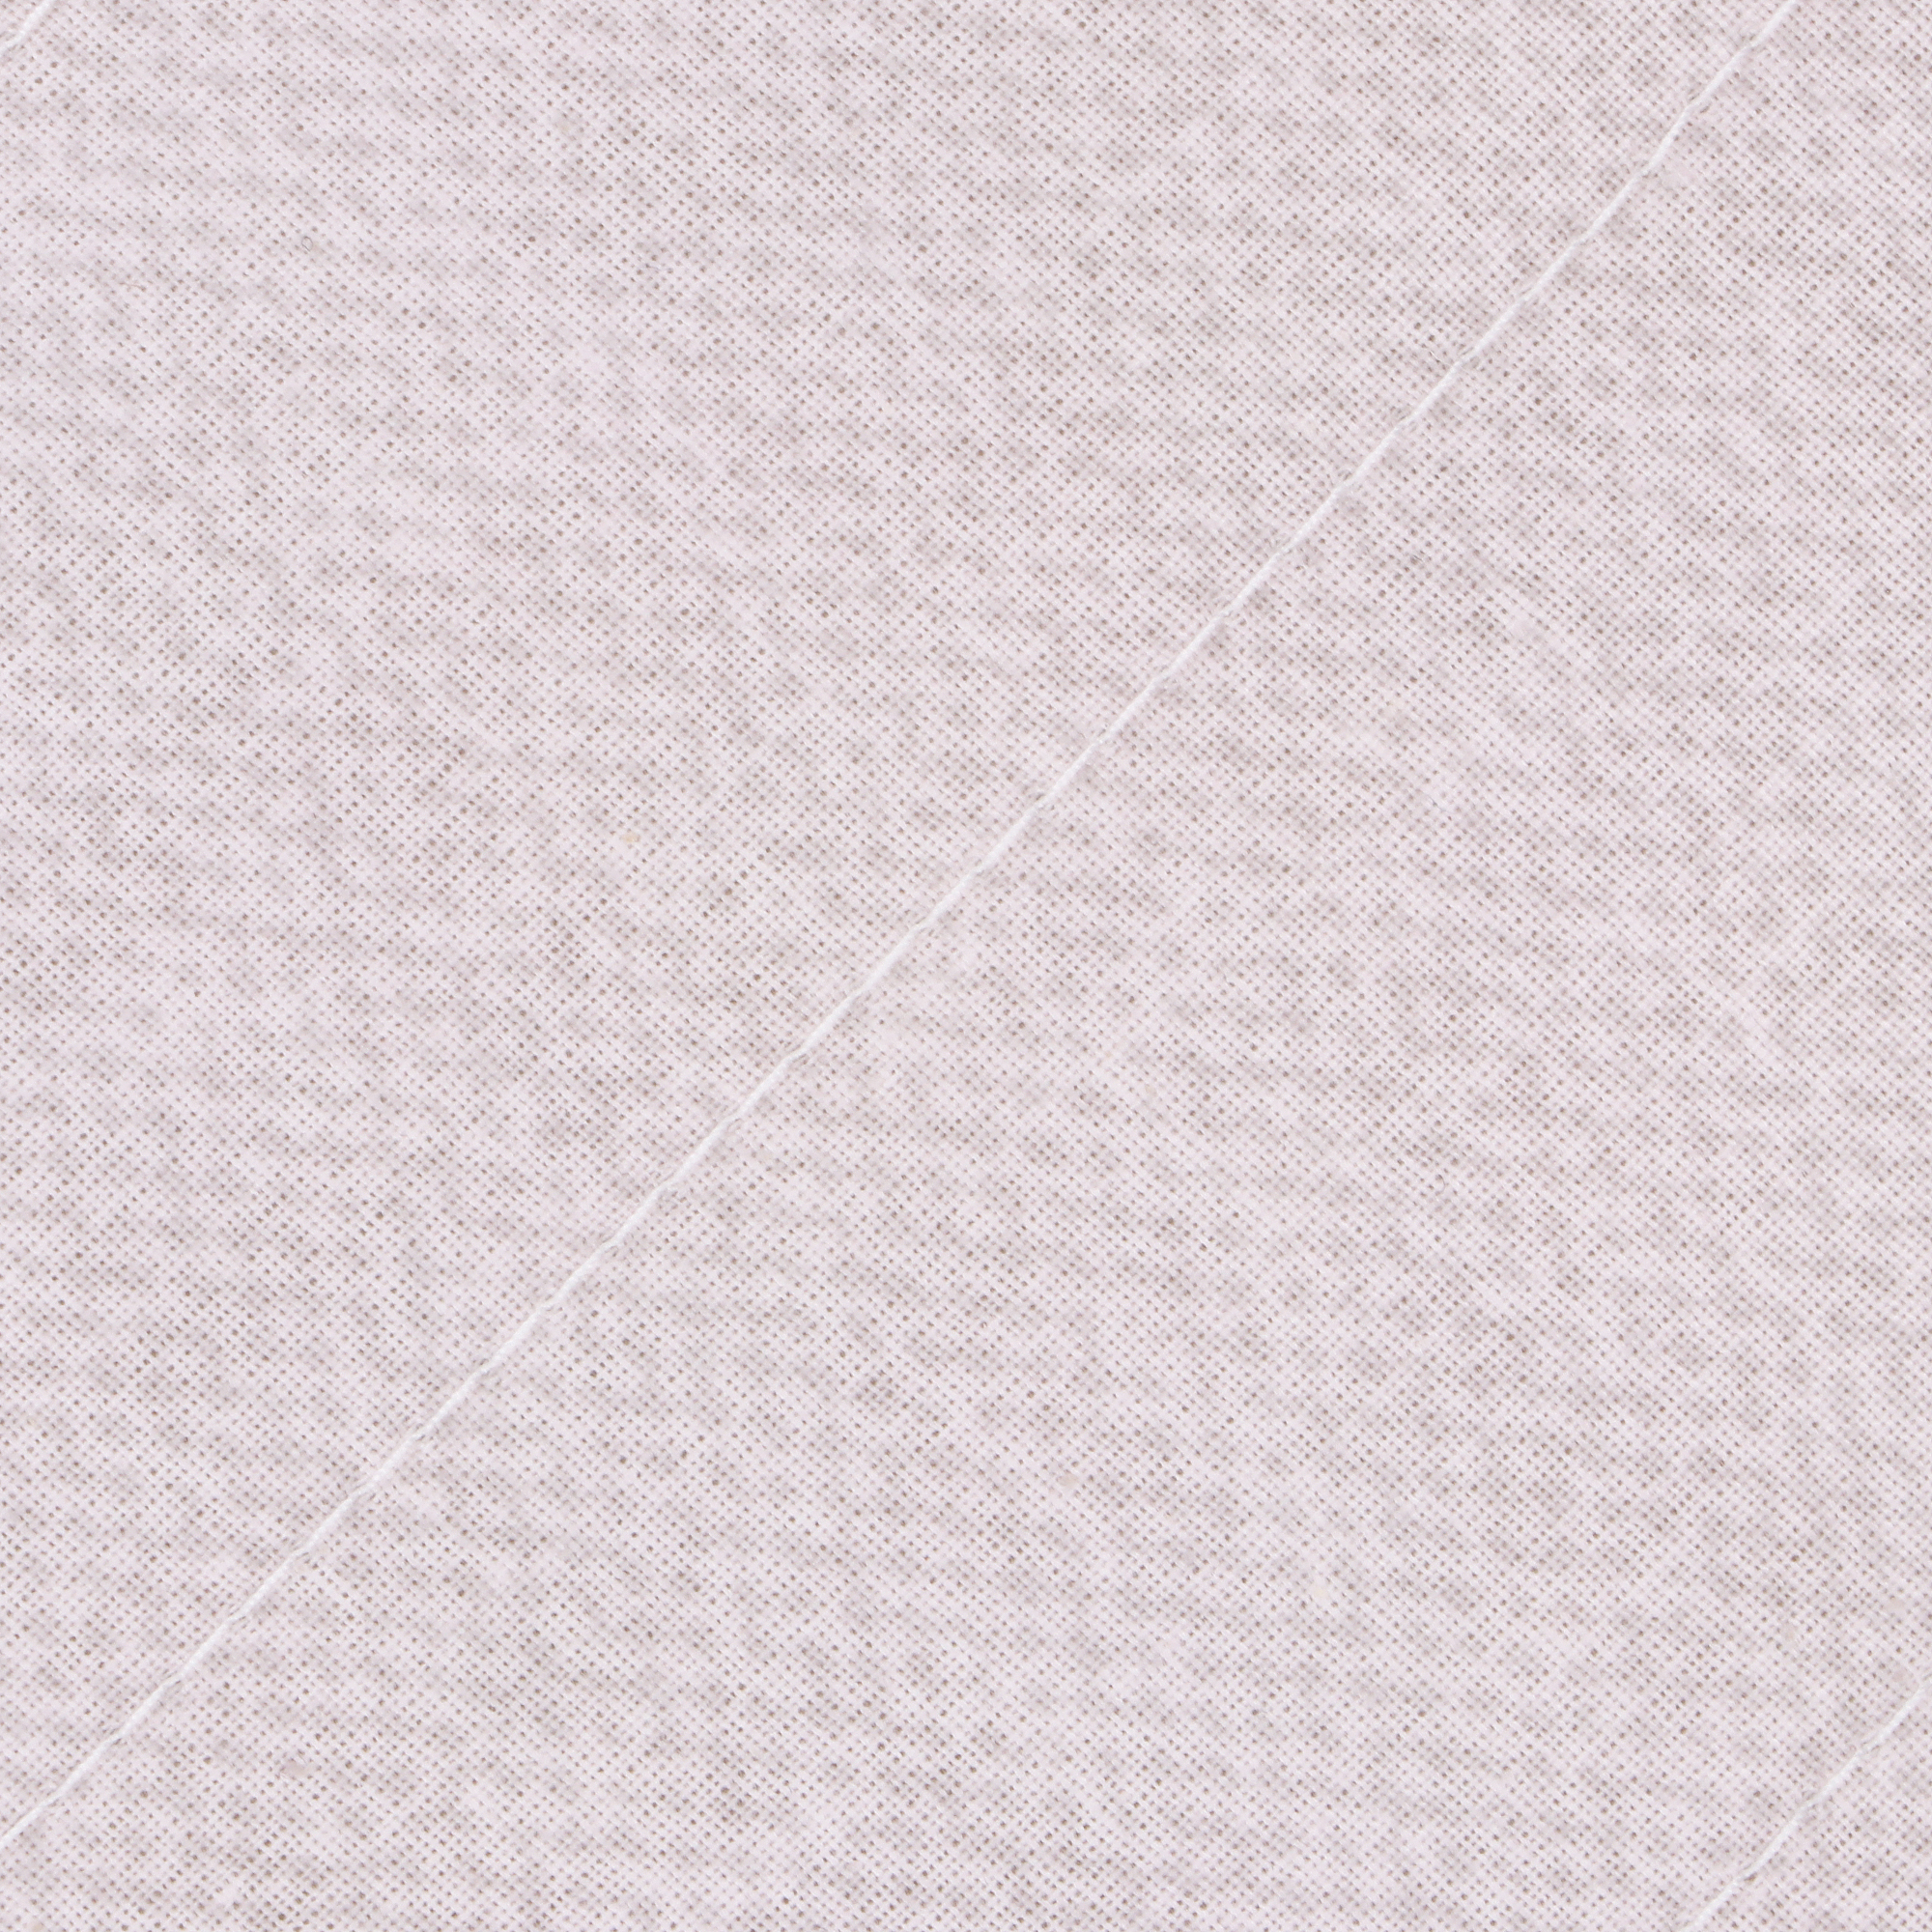 Подушка Medsleep Himalayas розовая 50х70 см, цвет розовый - фото 2